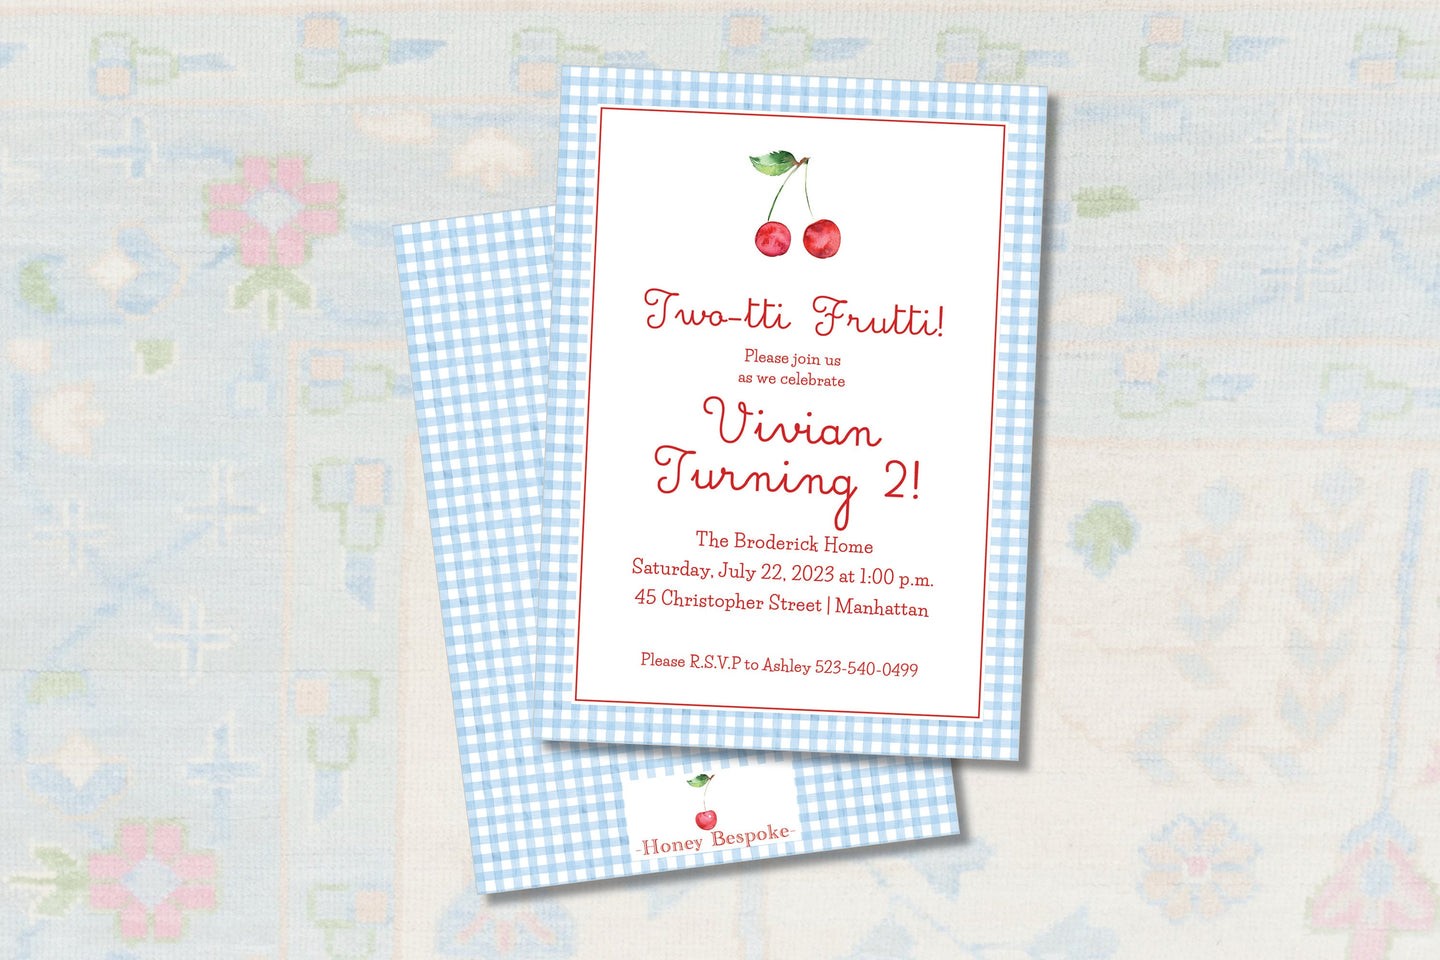 Twotti Fruitti Invitation / Twotti Fruity Invitation / Watercolor Birthday Invitation / Cherry Invitation / Cherry On Top / Preppy / Girl